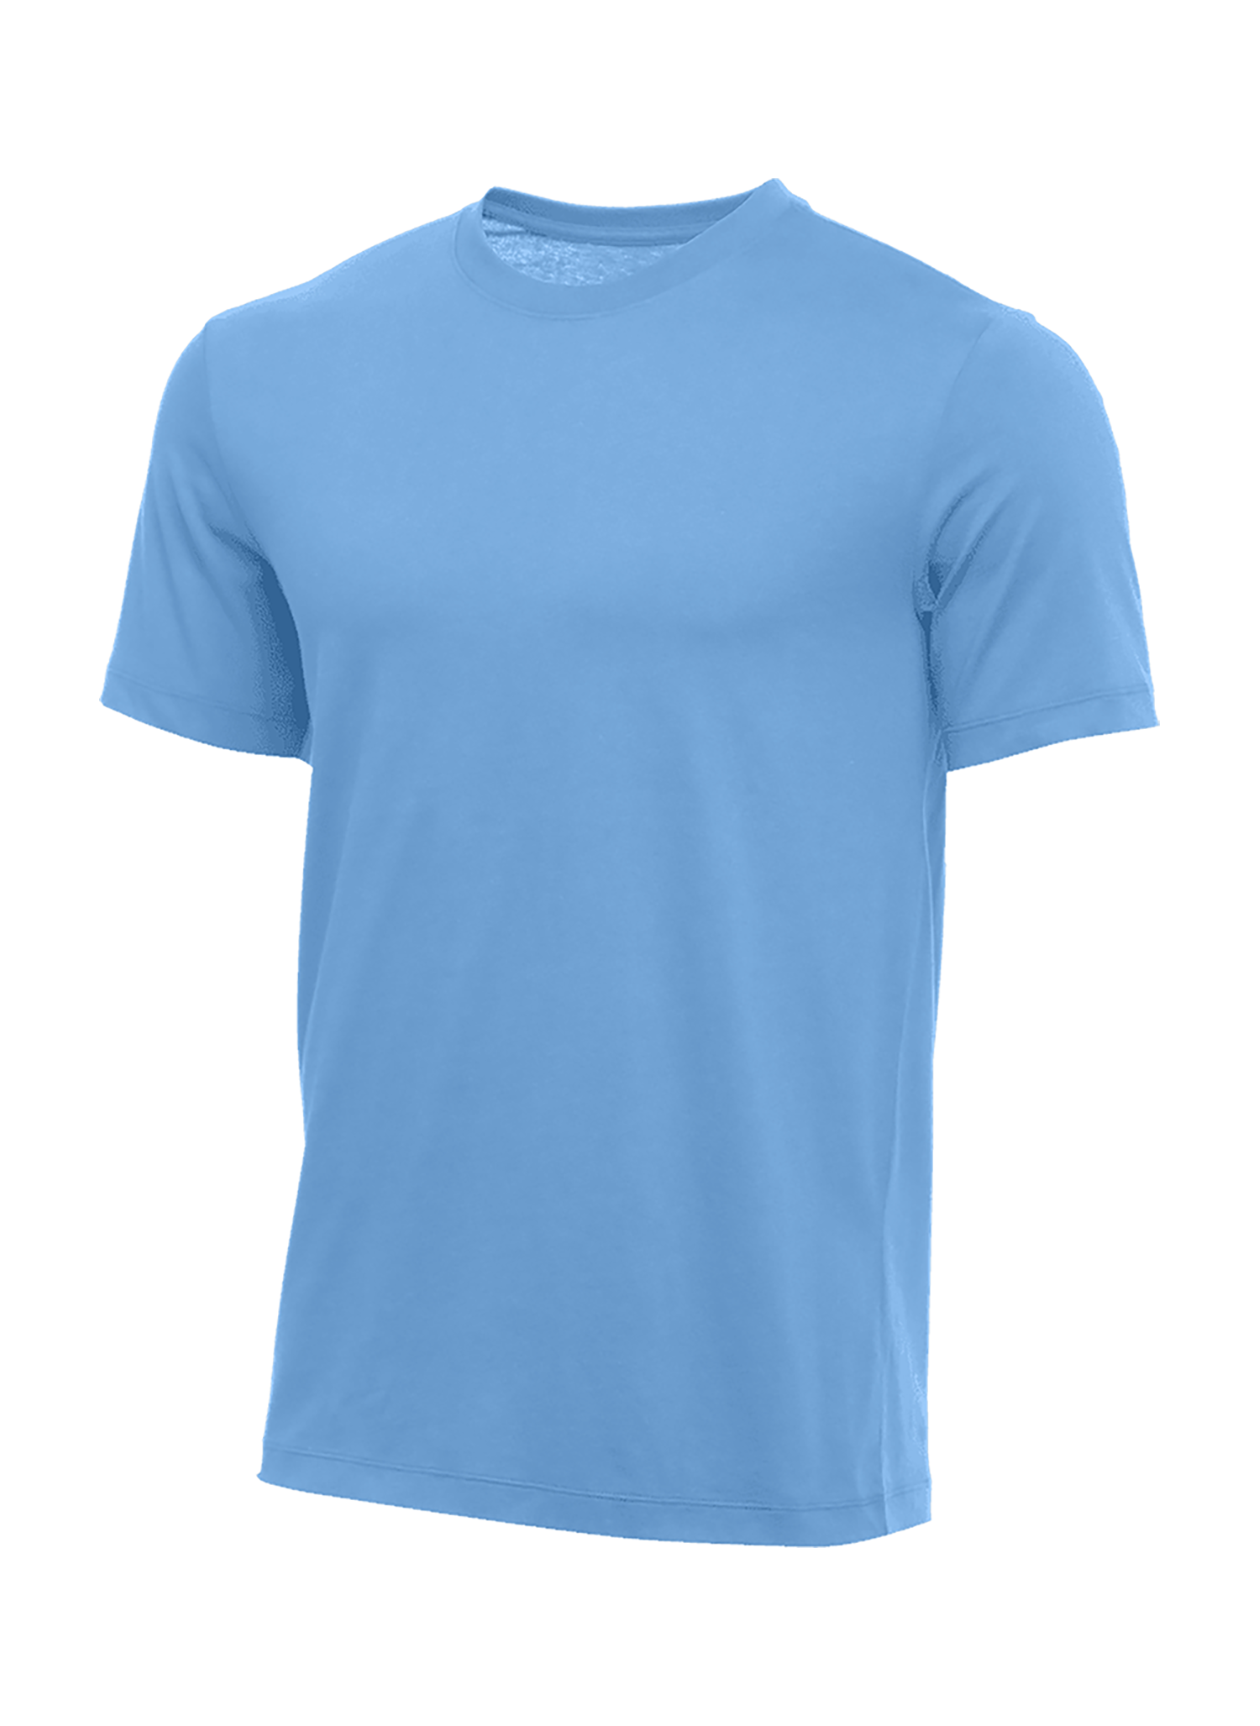 Nike Men's Valor Blue Training T-Shirt